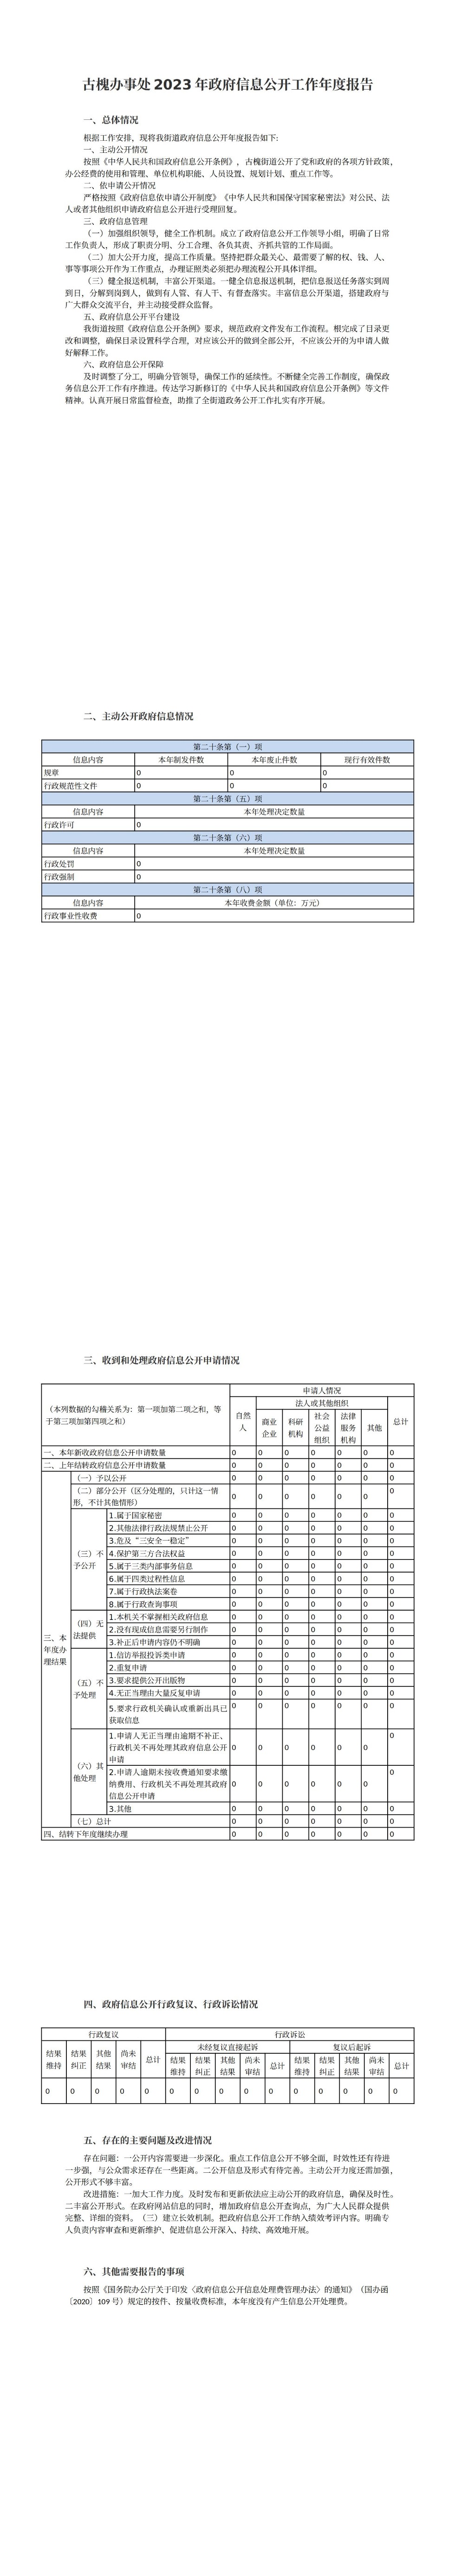 古槐办事处2023年政府信息公开工作年度报告_00.jpg